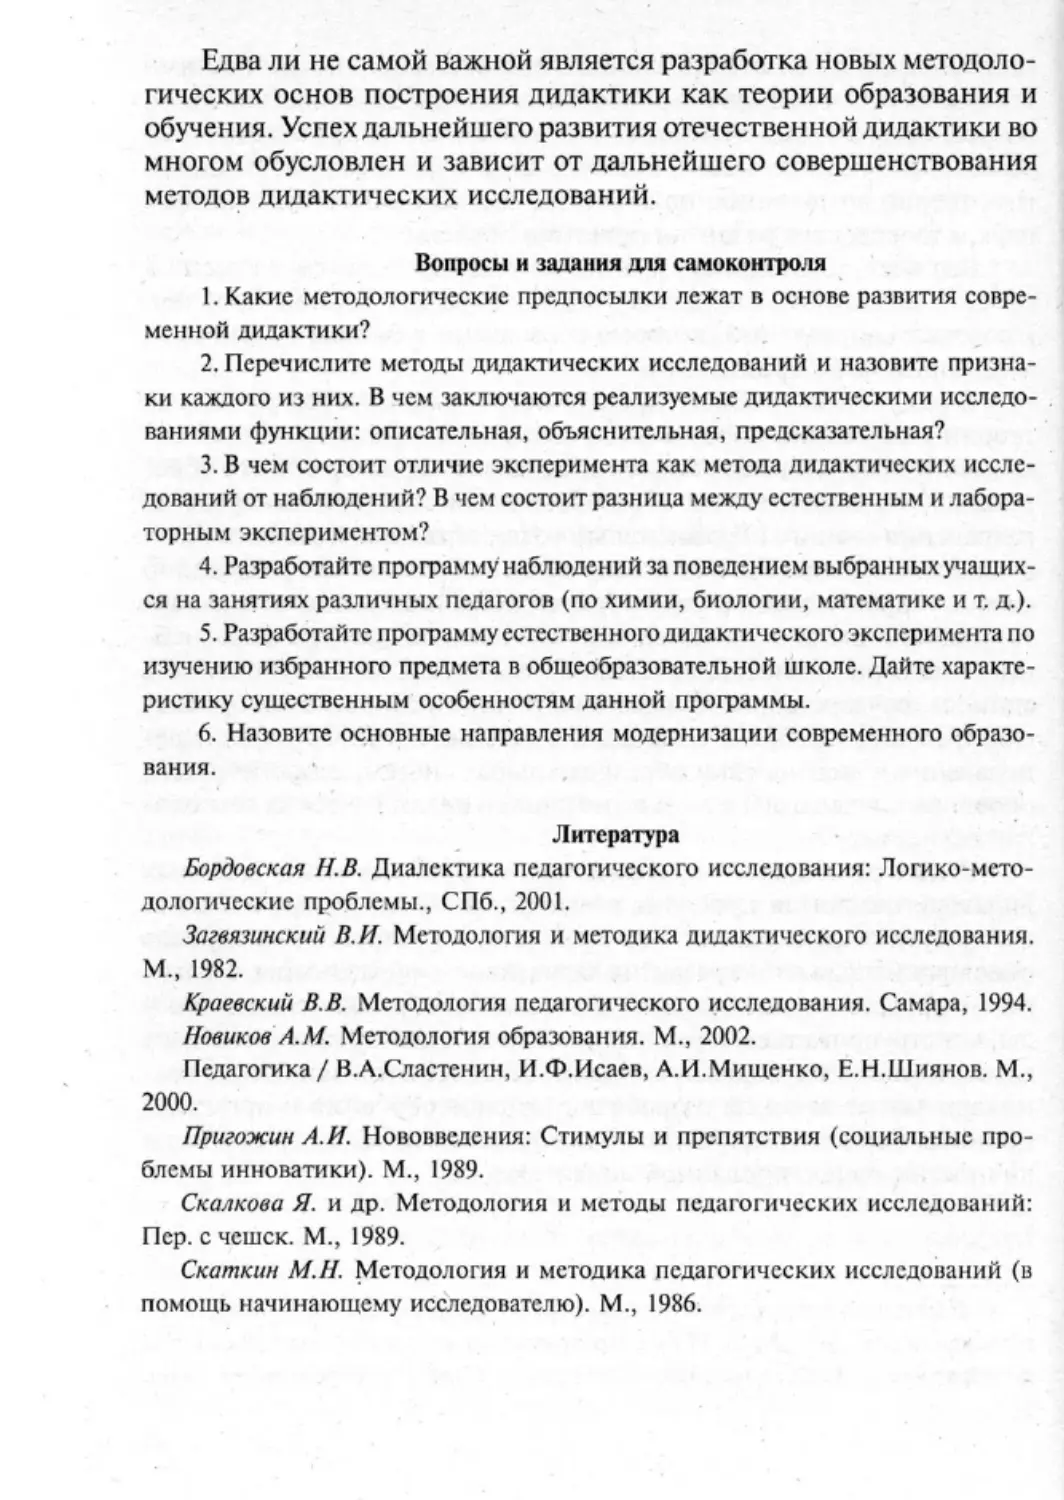 Загрекова Л.В., Николаева В.В - 0047